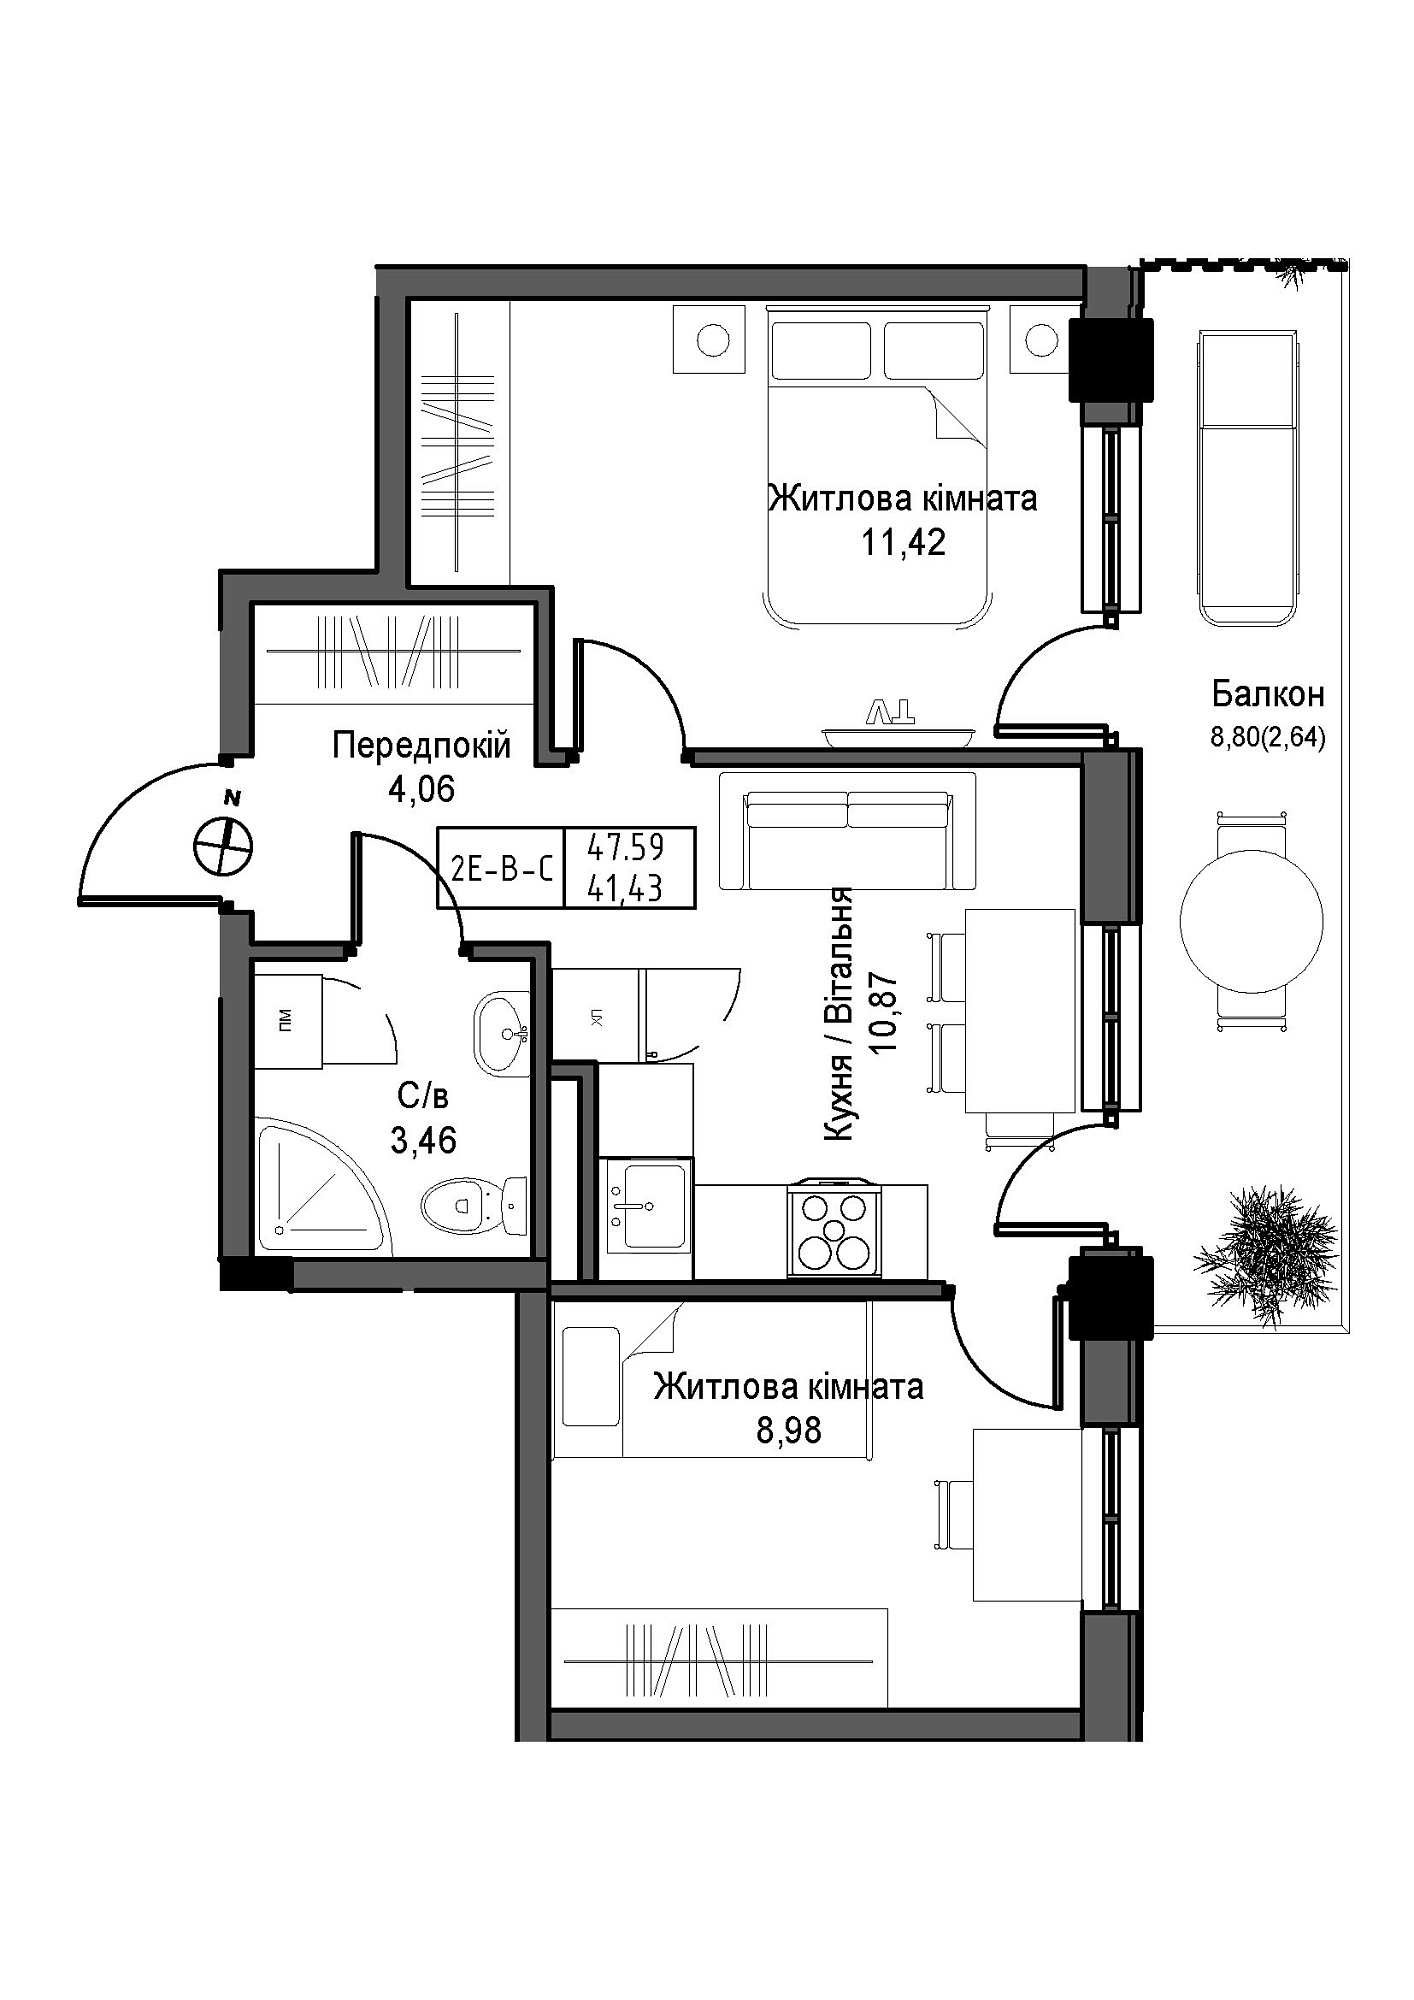 Планировка 2-к квартира площей 41.43м2, UM-007-12/0007.